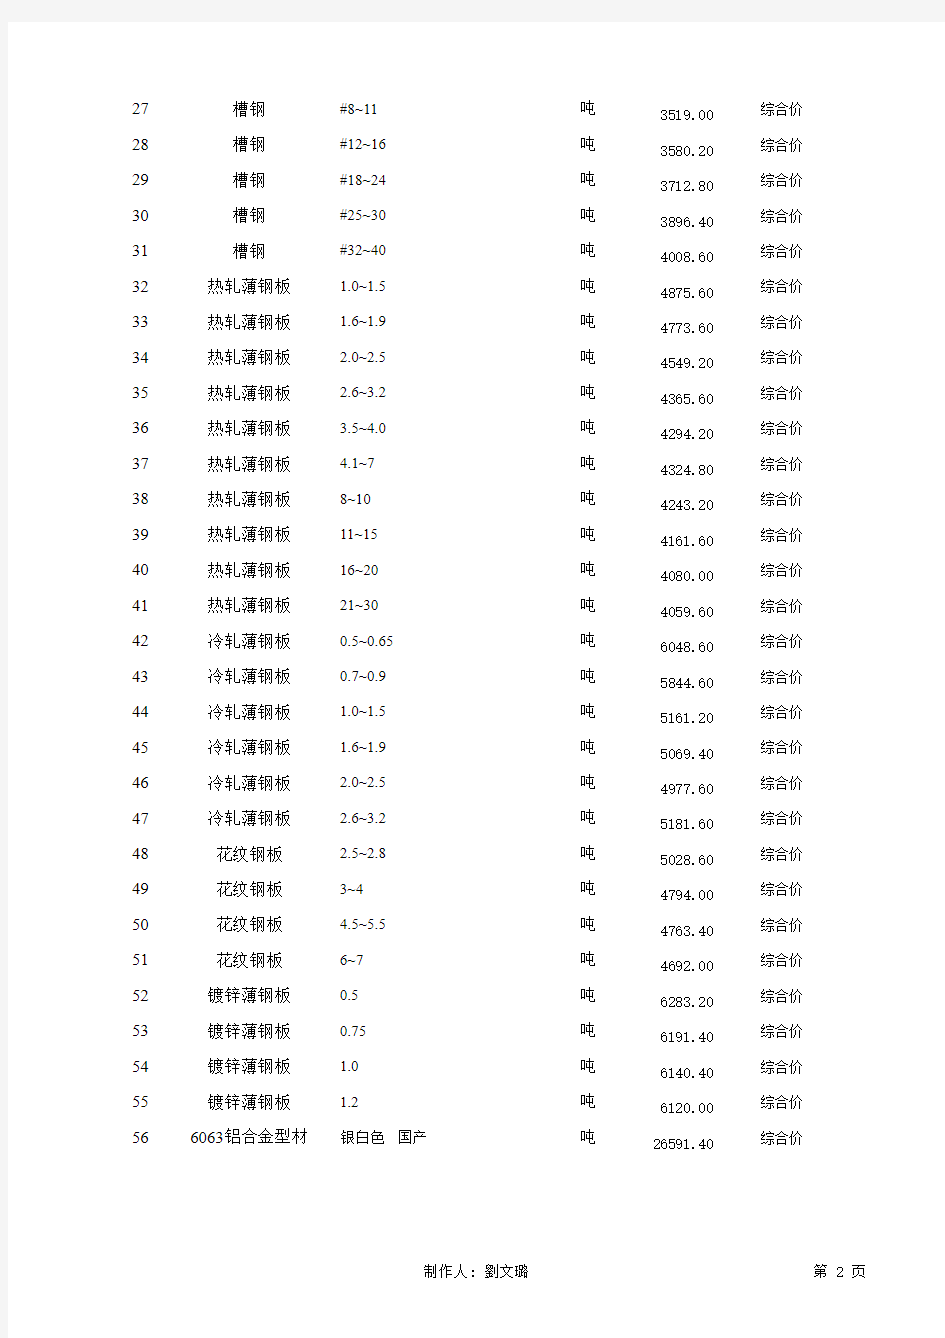 2003年~2006年广州地区信息价